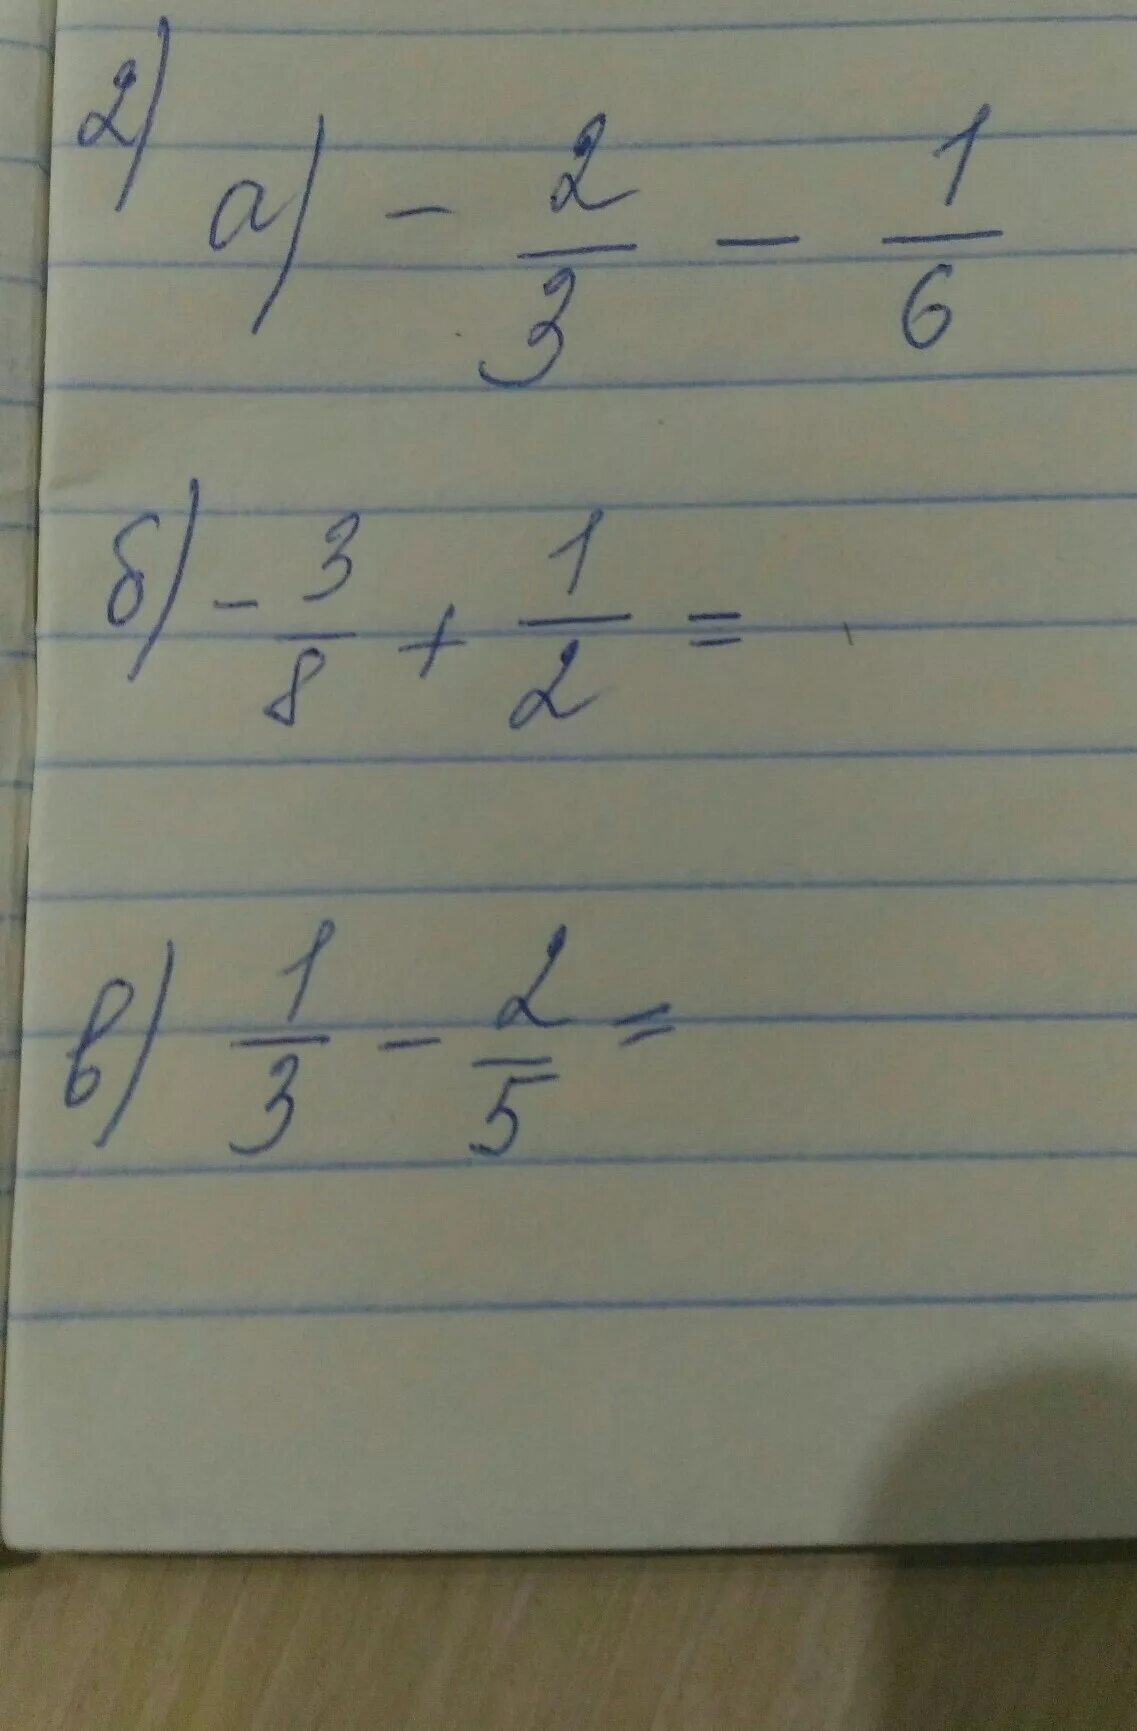 Вычислить а2 3. Вычислите (-3)2 + (1/3)2*3. 1+1=2. 1 2 3. Во-2,3.